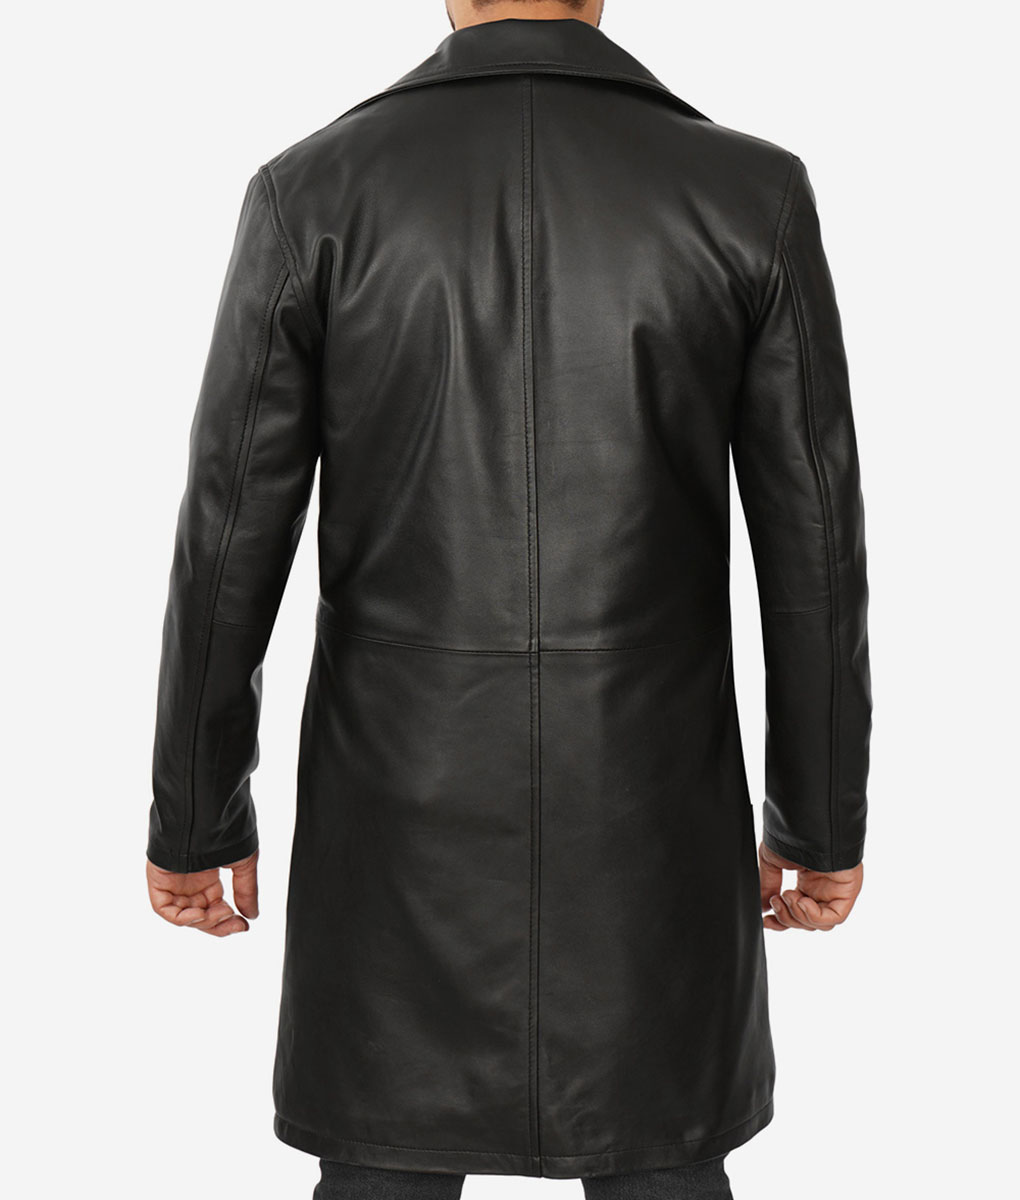 Dennis Mens Black Leather Coat